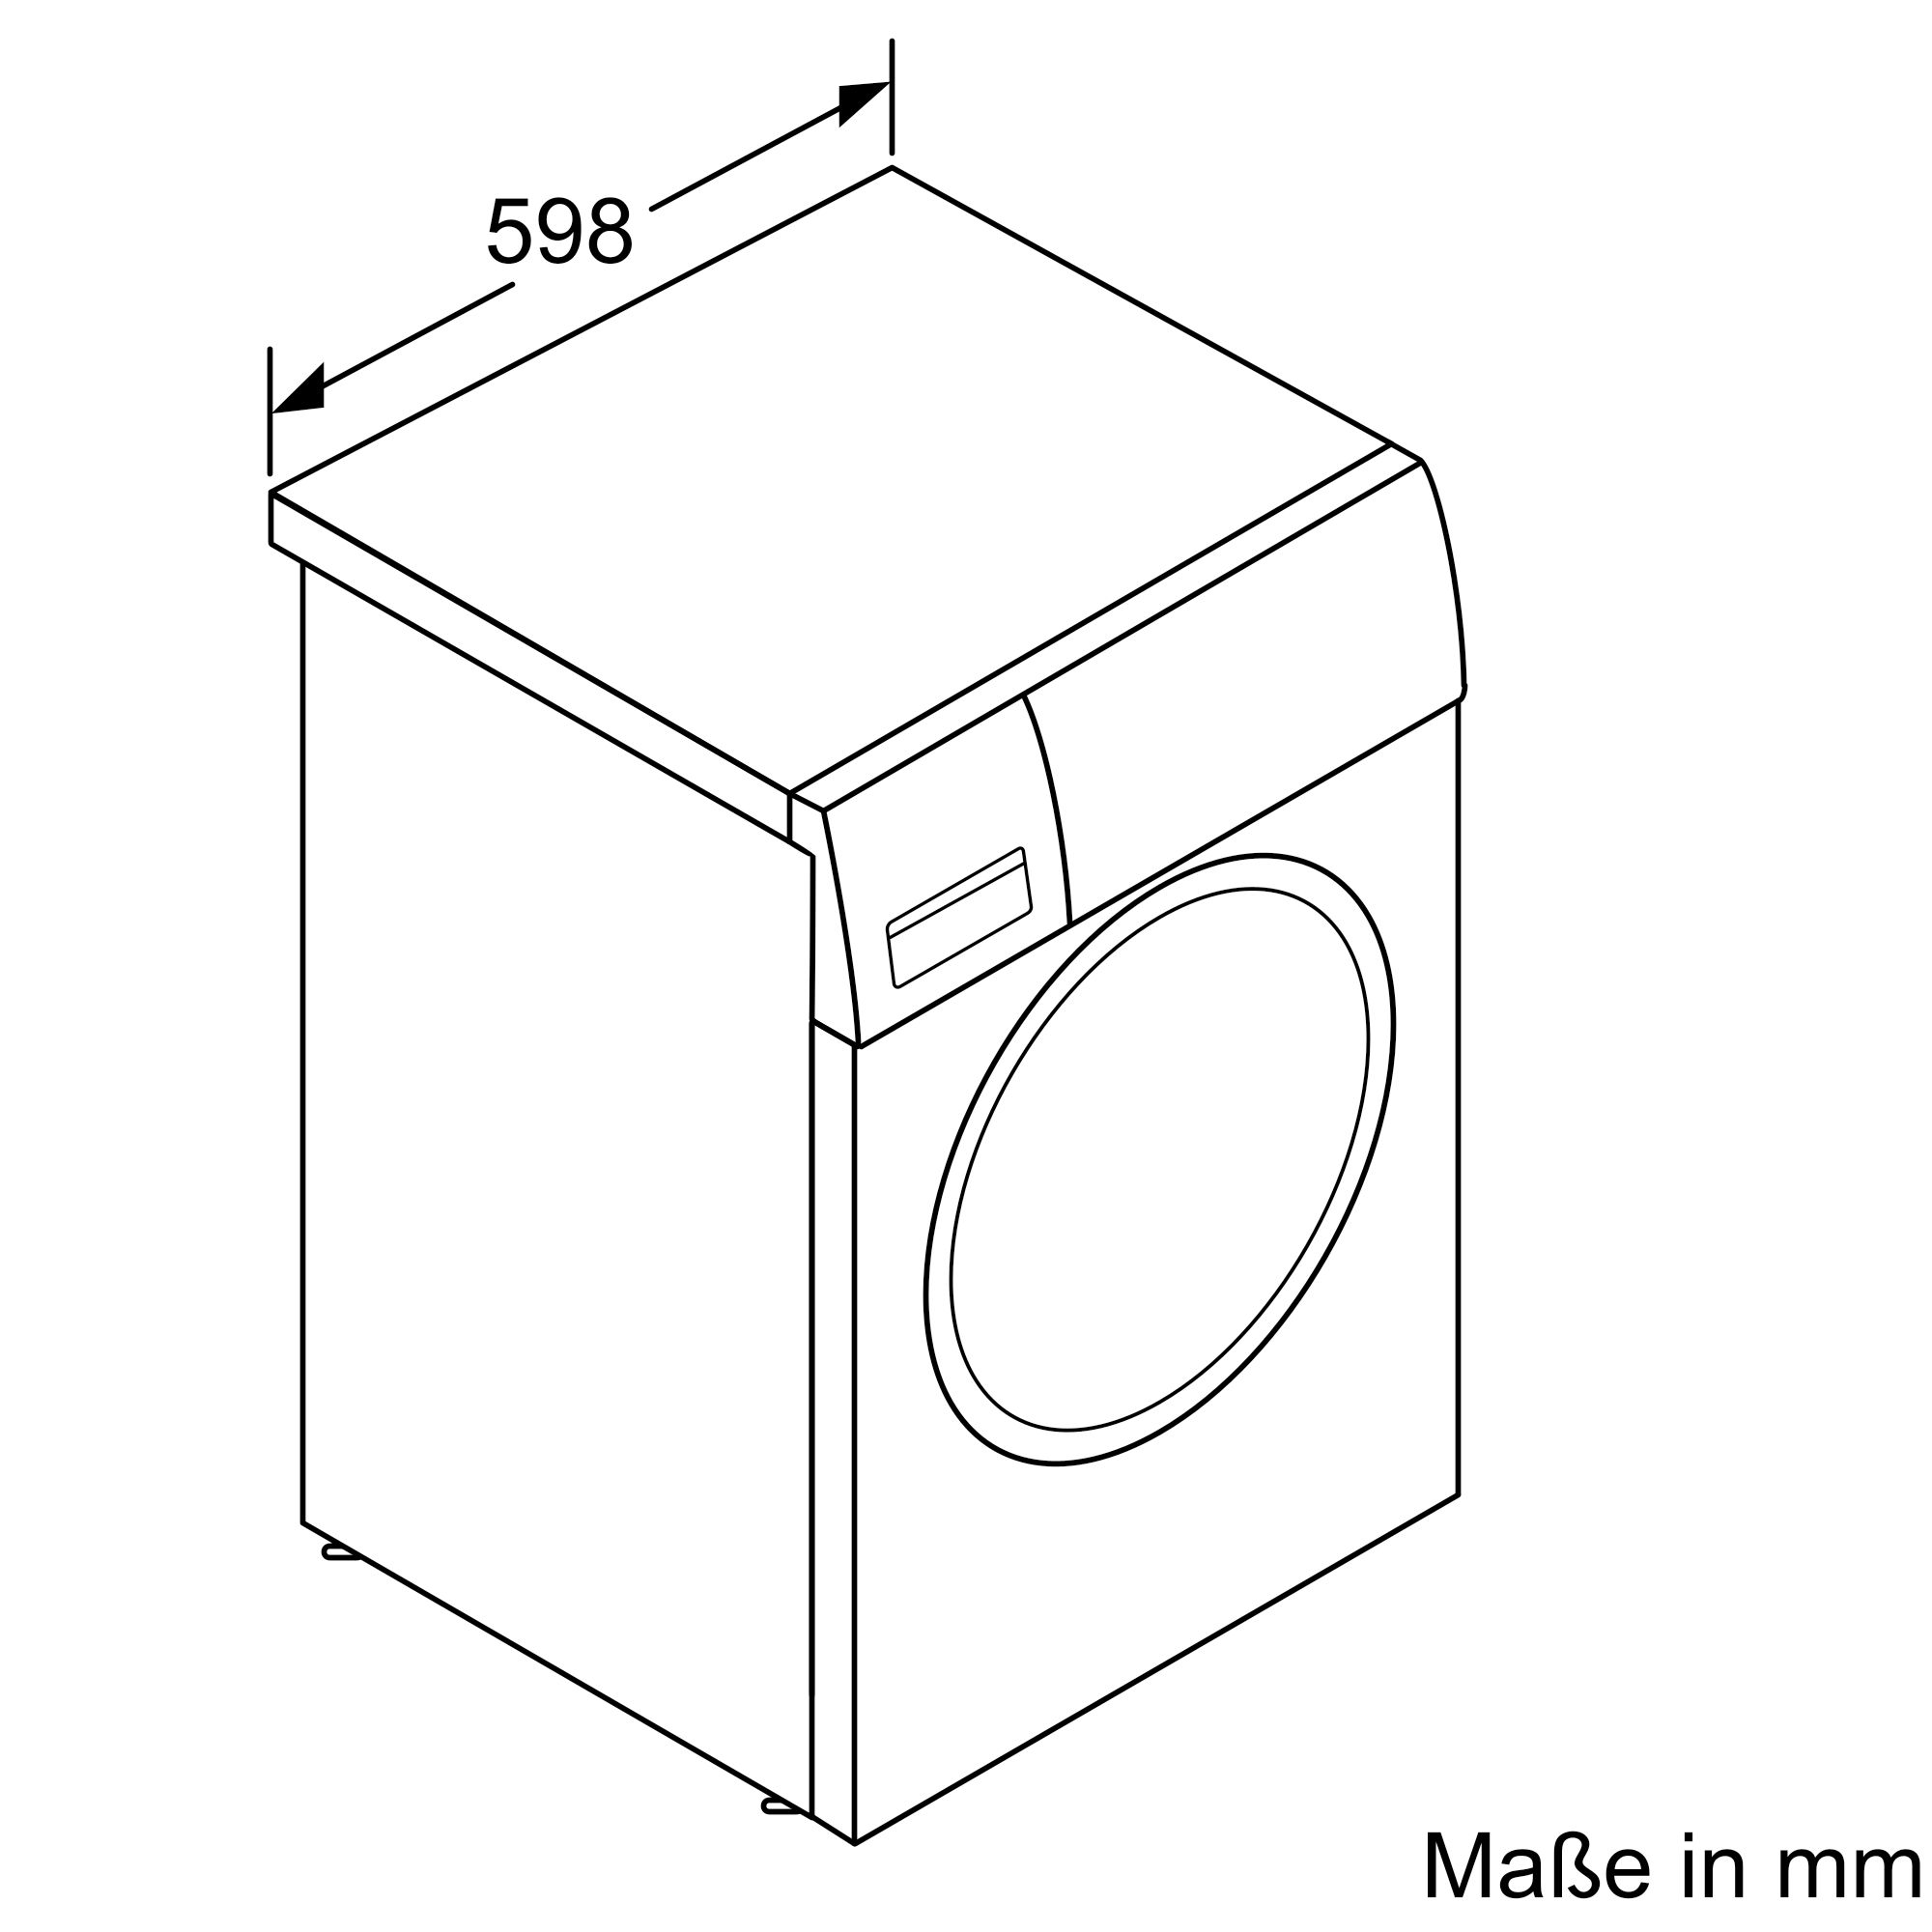 BOSCH WAN 28122 Waschmaschine (7,0 kg, U/Min., D) 1400